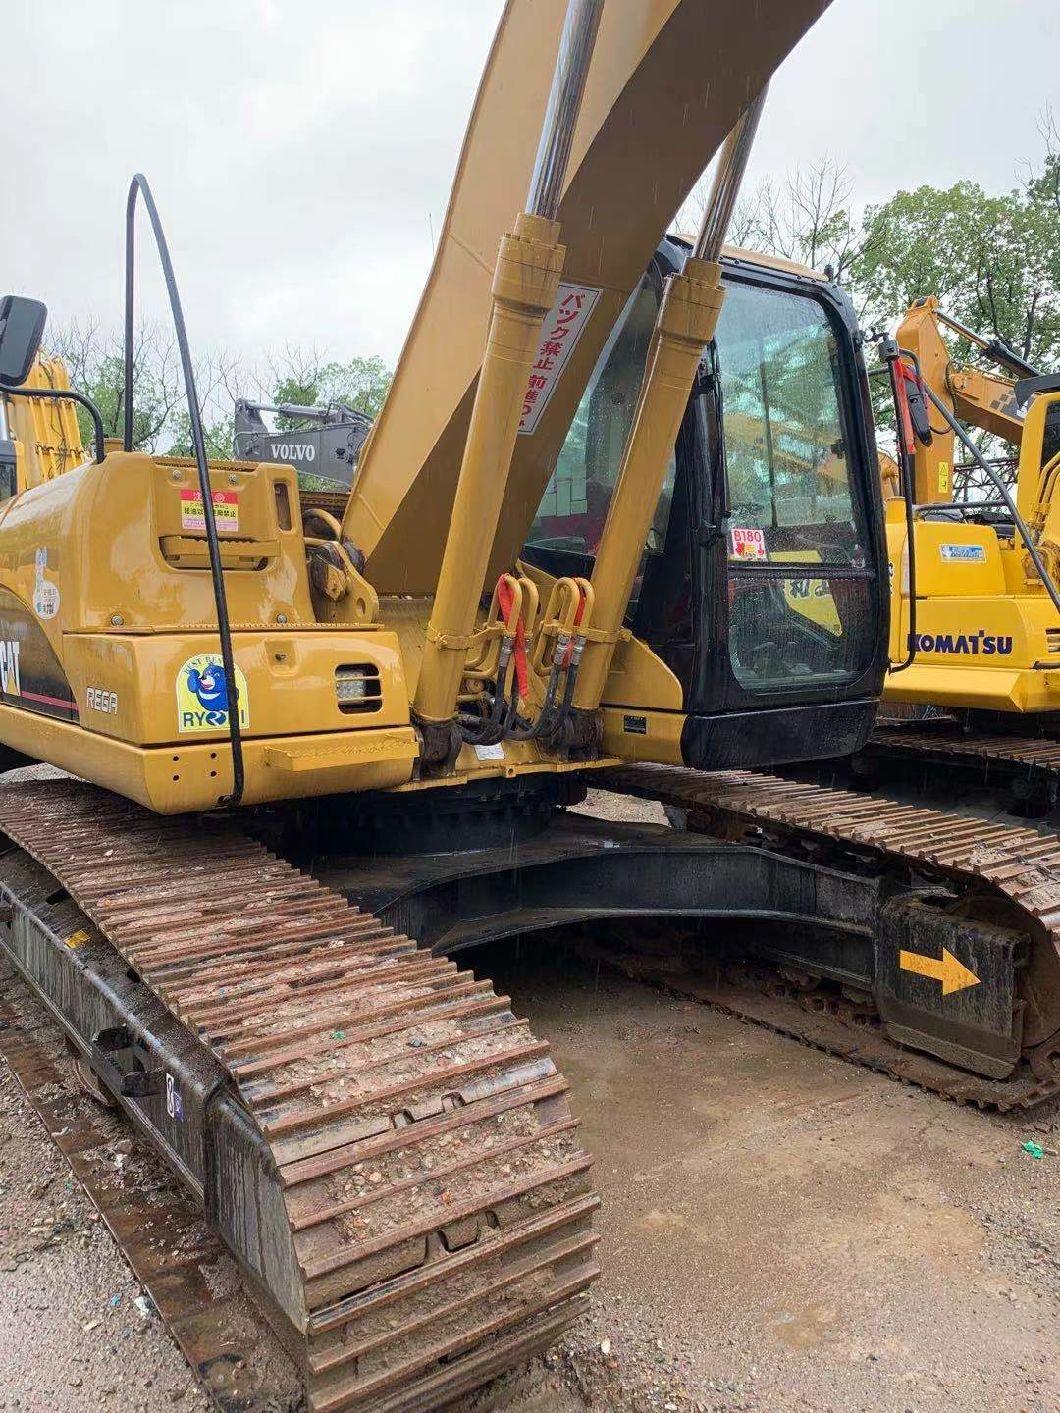 Used Cat 330b Crawler Excavator Is on Sale 330b